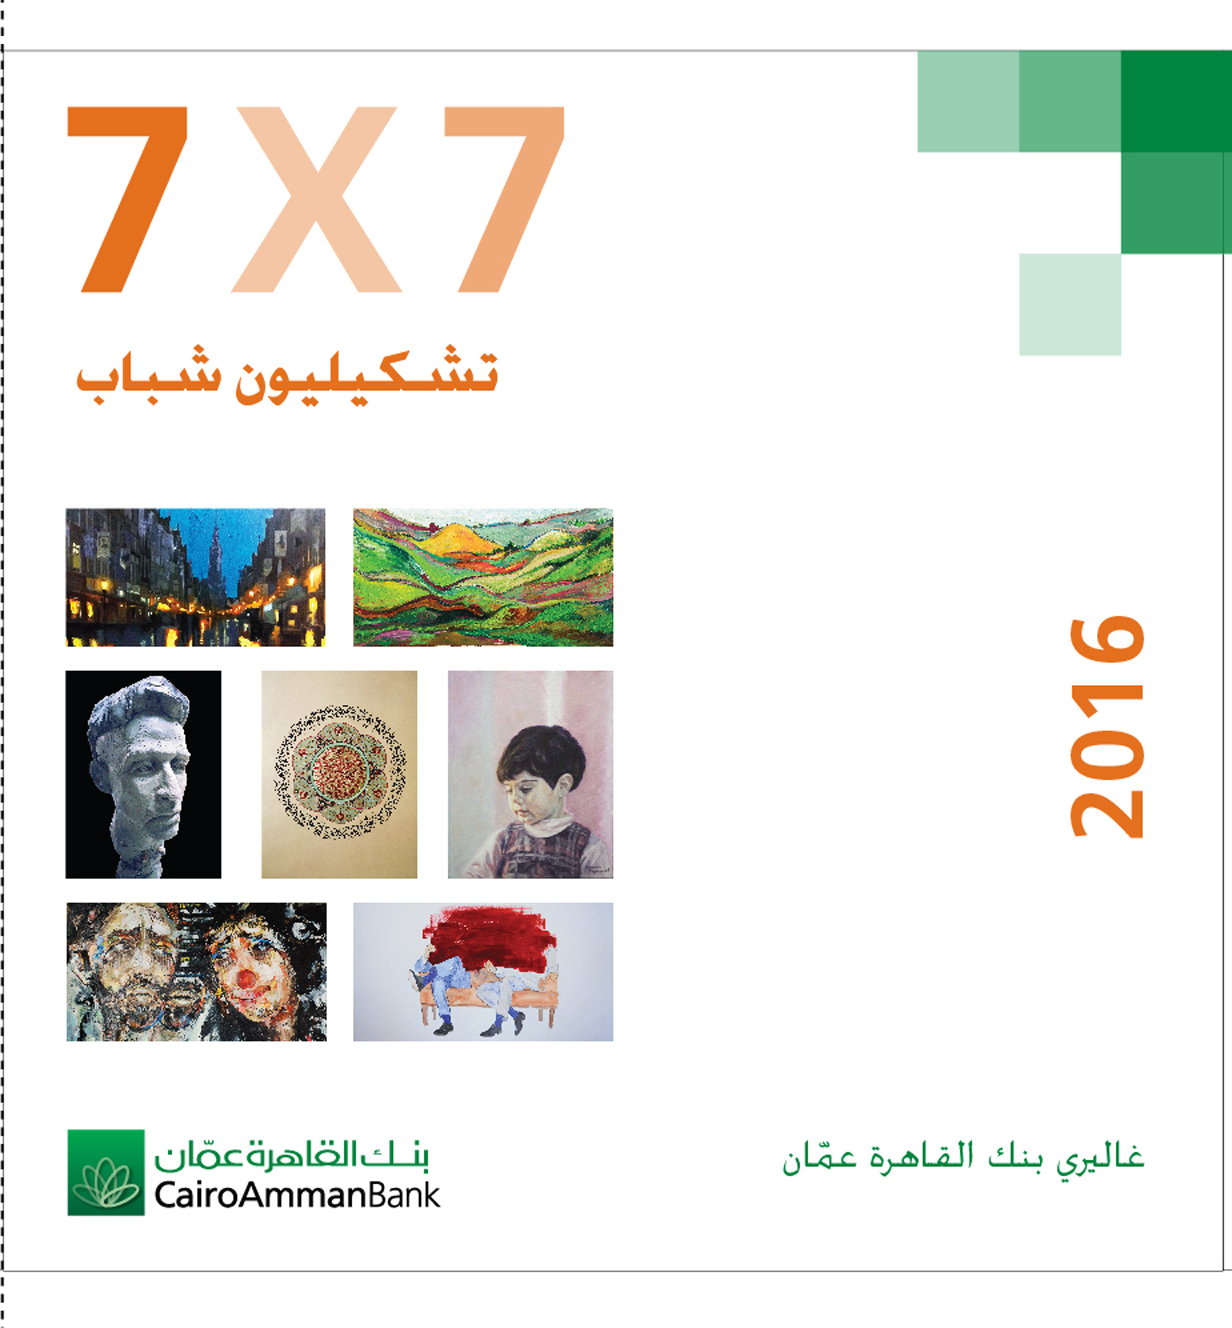  تشكيليون شباب7x7  في غاليري بنك القاهرة عمان